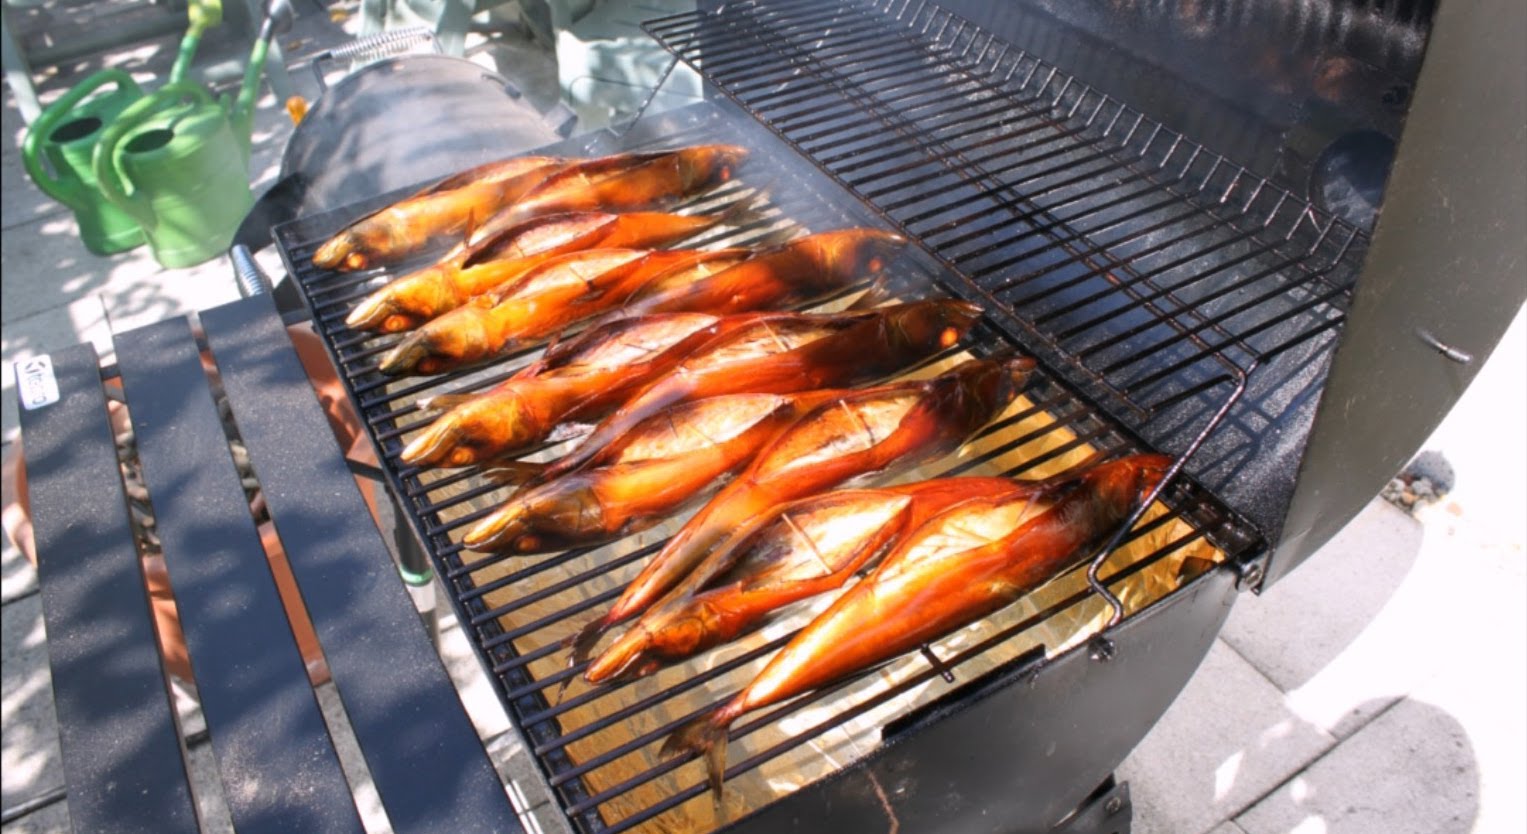 Как коптить рыбу в коптильне горячего копчения: рецепты, как подготовить к приготовлению